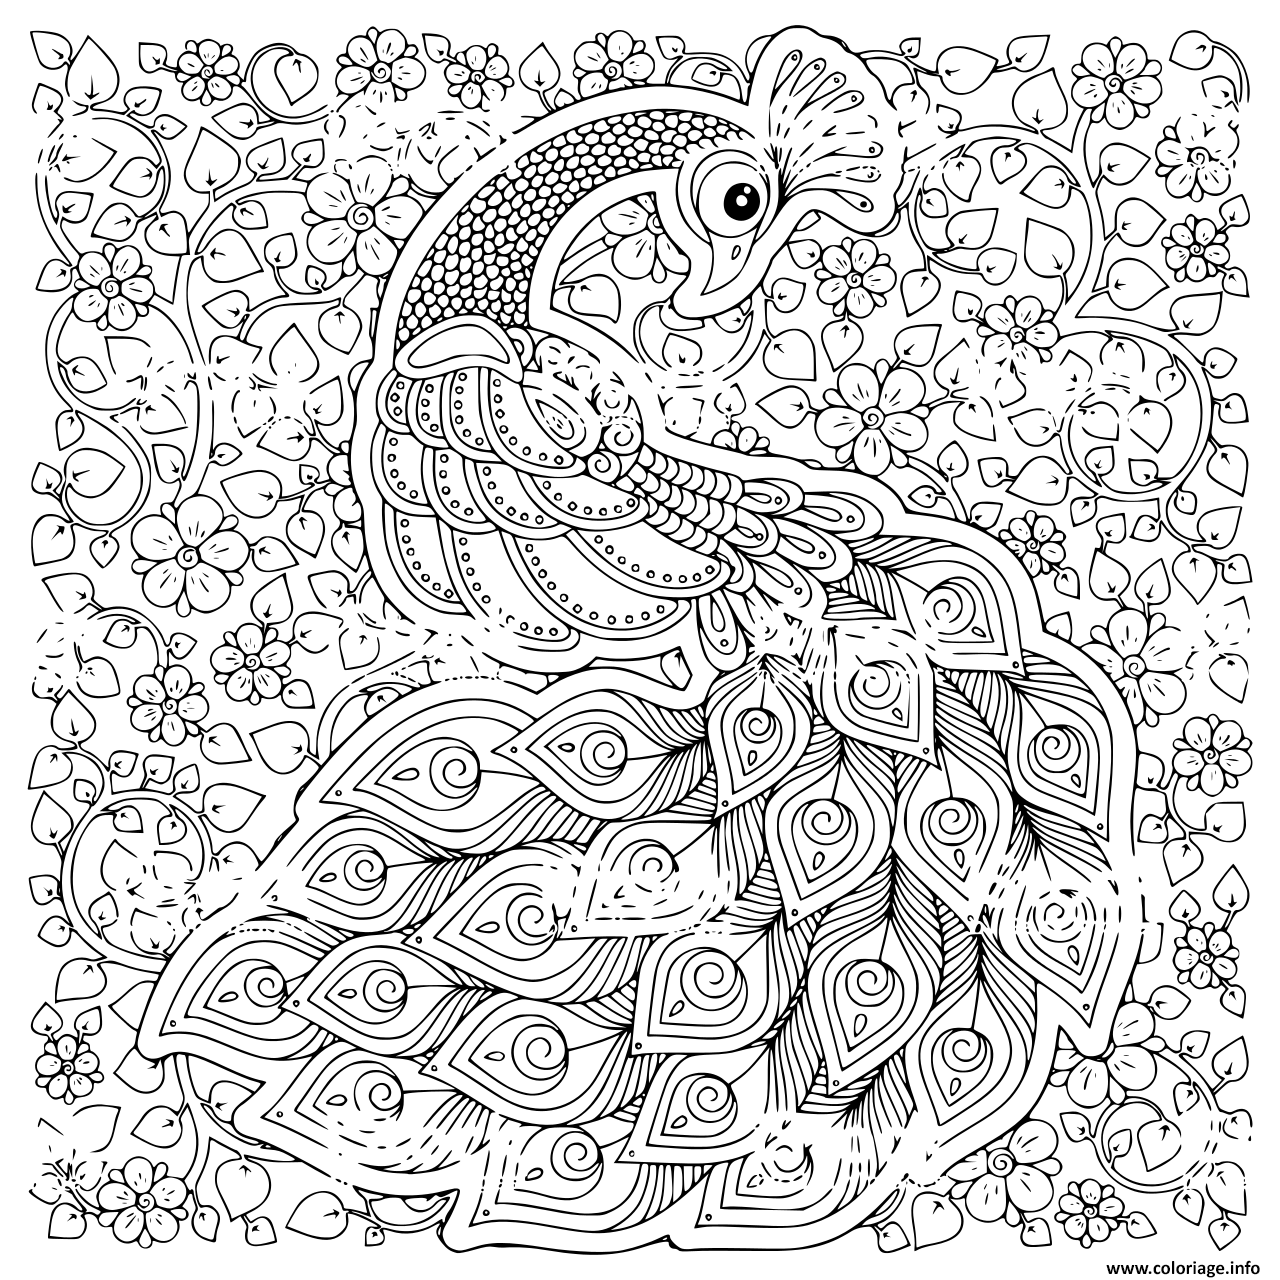 Coloriage Paon Oiseau Symbole De Fertilite Et Immortalite En Inde Dessin à Imprimer